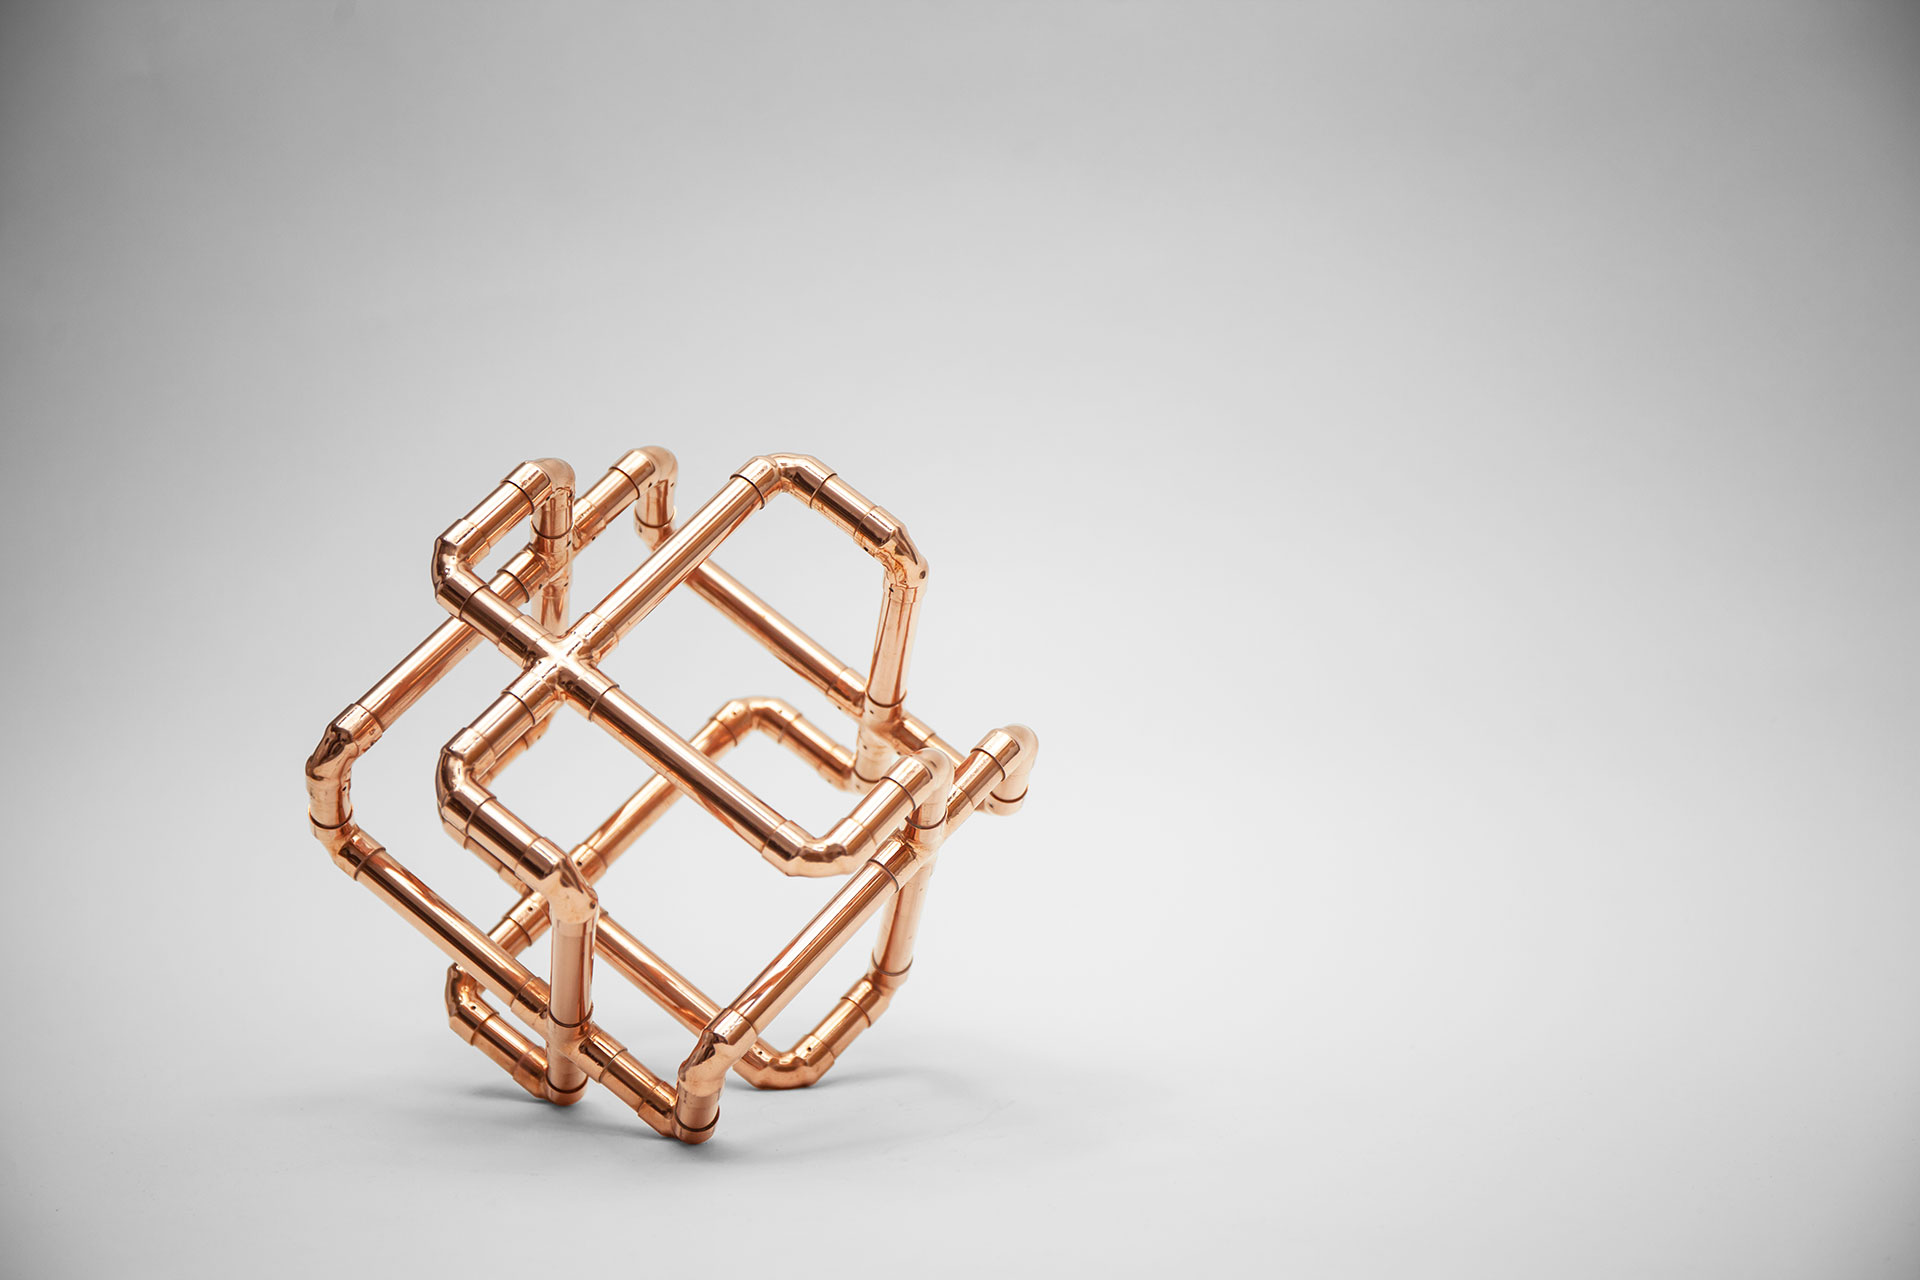 Conceptual design copper pipe decoration